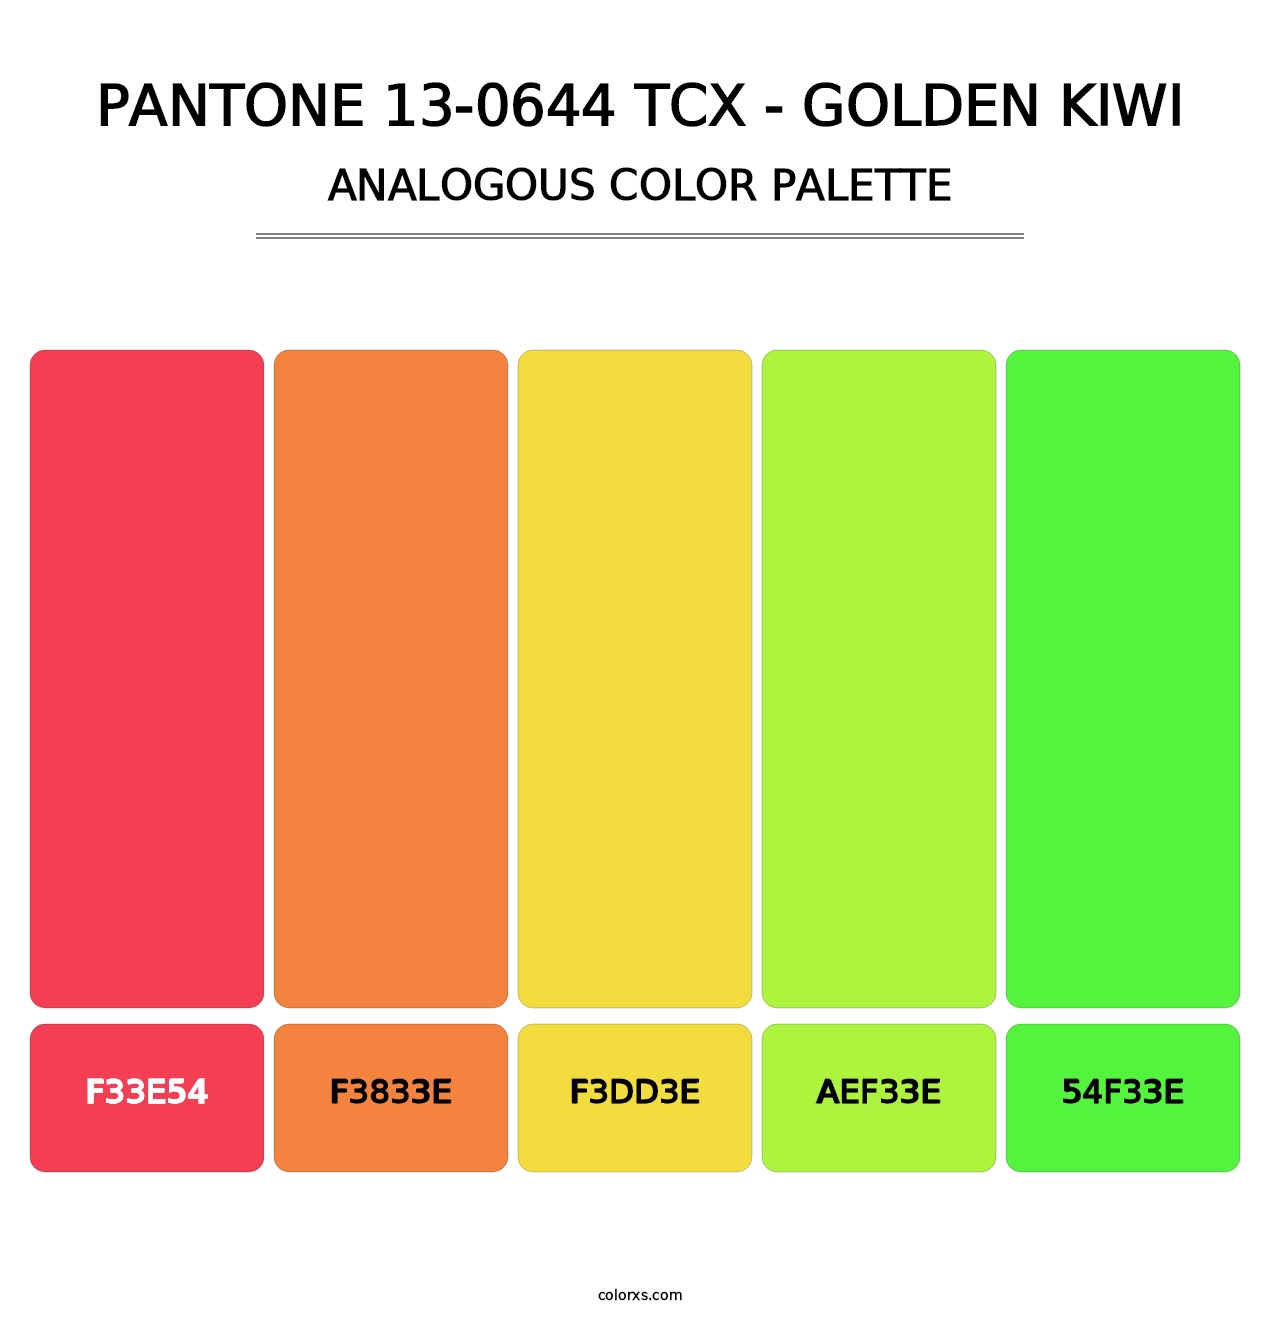 PANTONE 13-0644 TCX - Golden Kiwi - Analogous Color Palette